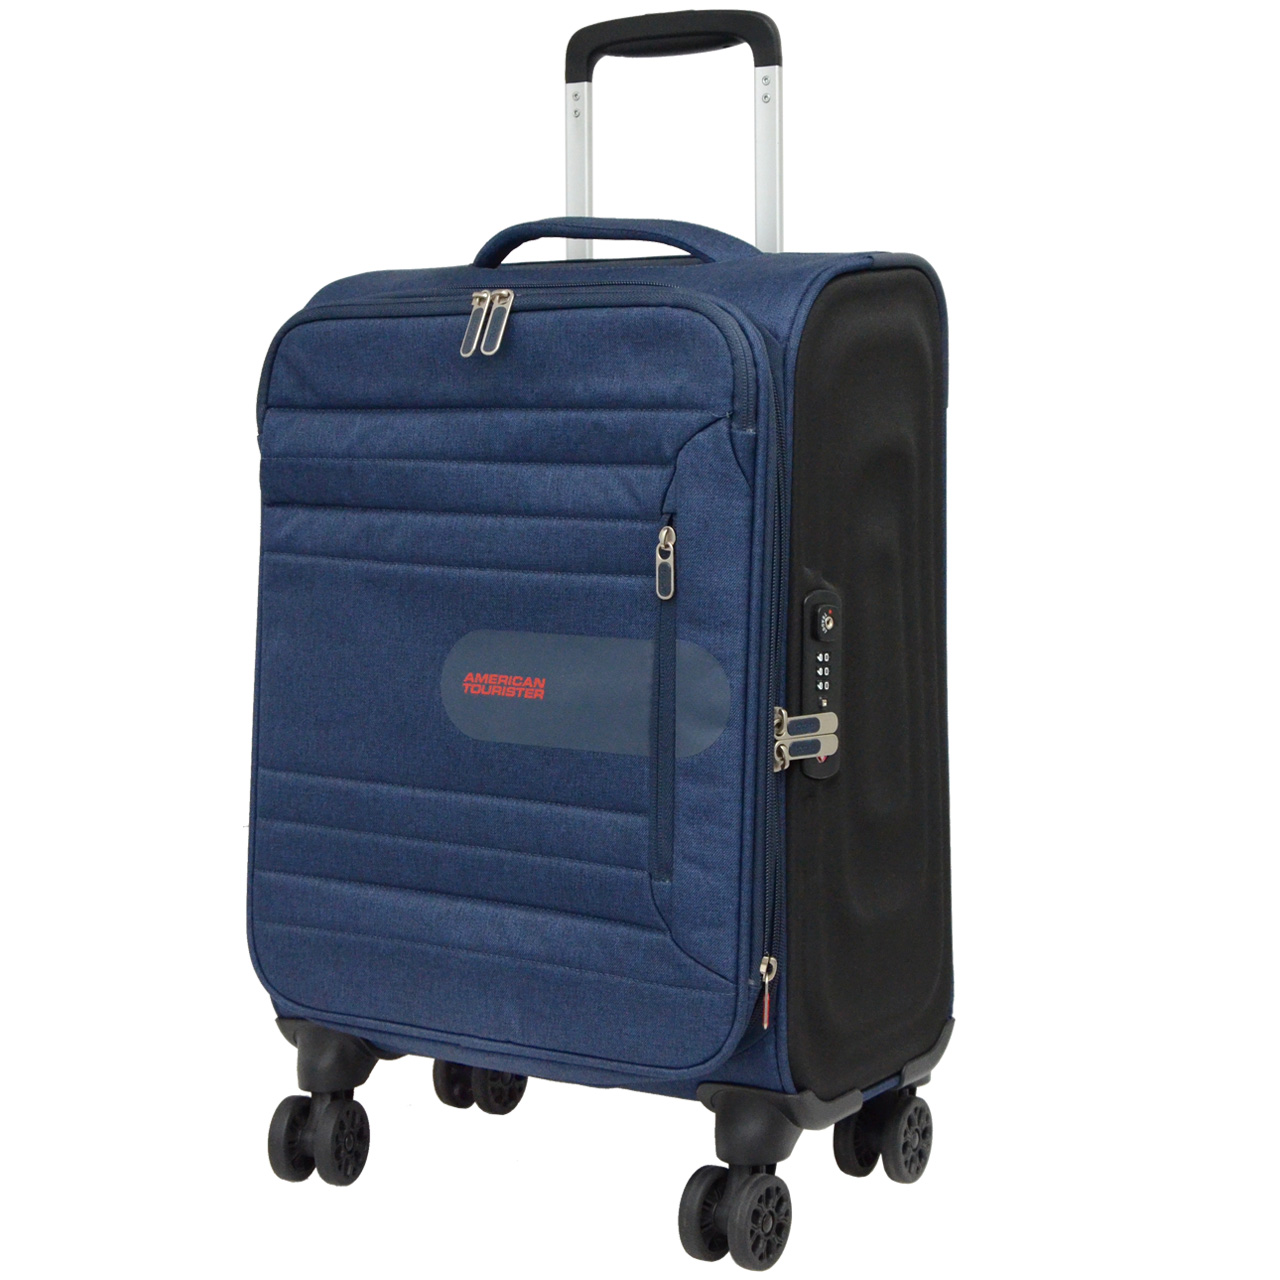 چمدان امریکن توریستر مدل 20 - 700350 - 46G